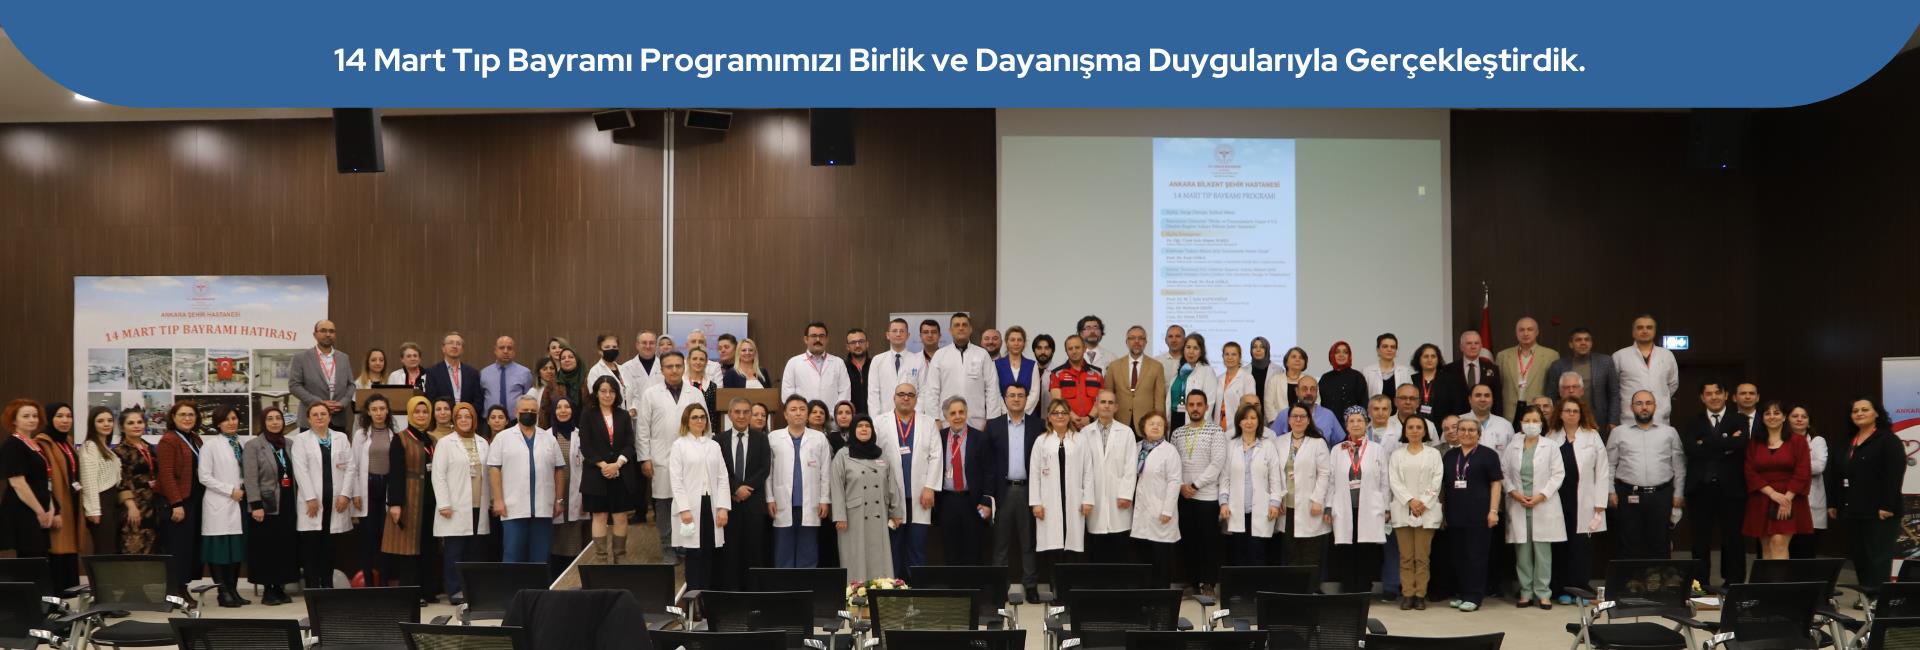 Ankara Bilkent Şehir Hastanesi Ailesi Olarak 14 Mart Tıp Bayramı Programımızı Birlik ve Dayanışma Duygularıyla Gerçekleştirdik.